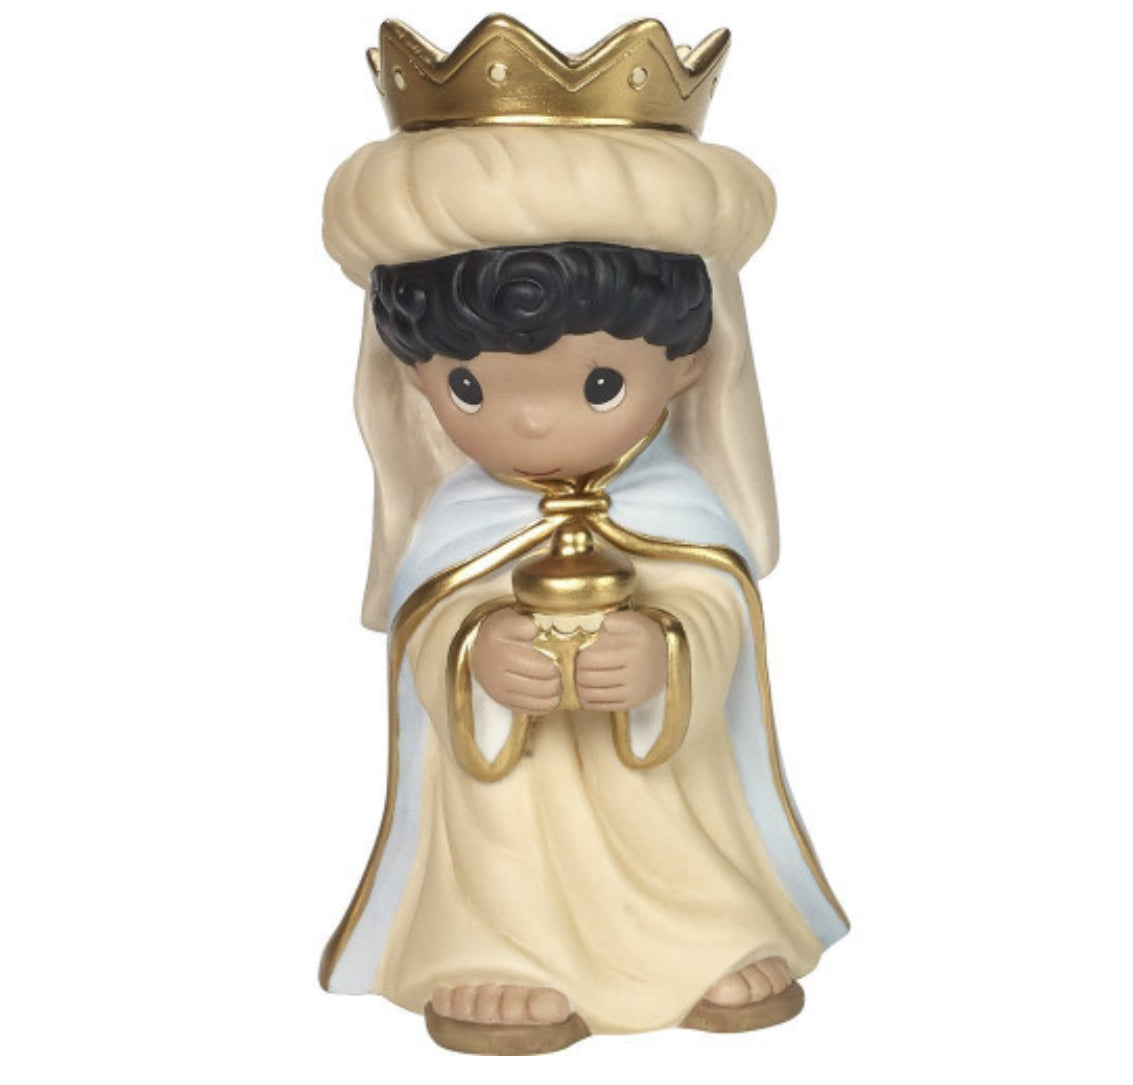 O Come Let Us Adore Him - Precious Moment Figurine Eleven - Piece Nativity Set